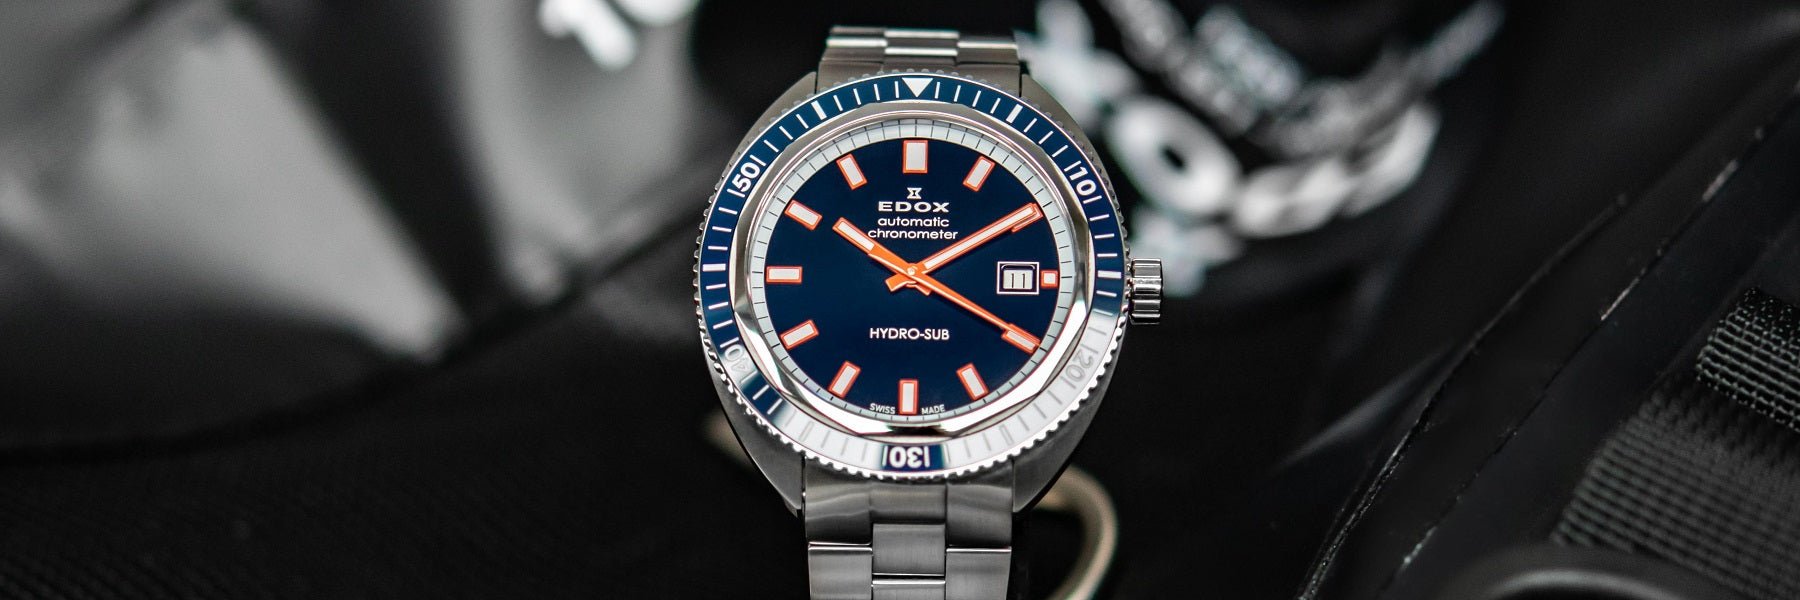 Hydro-Sub - The Submarine Watch - Edox Watches